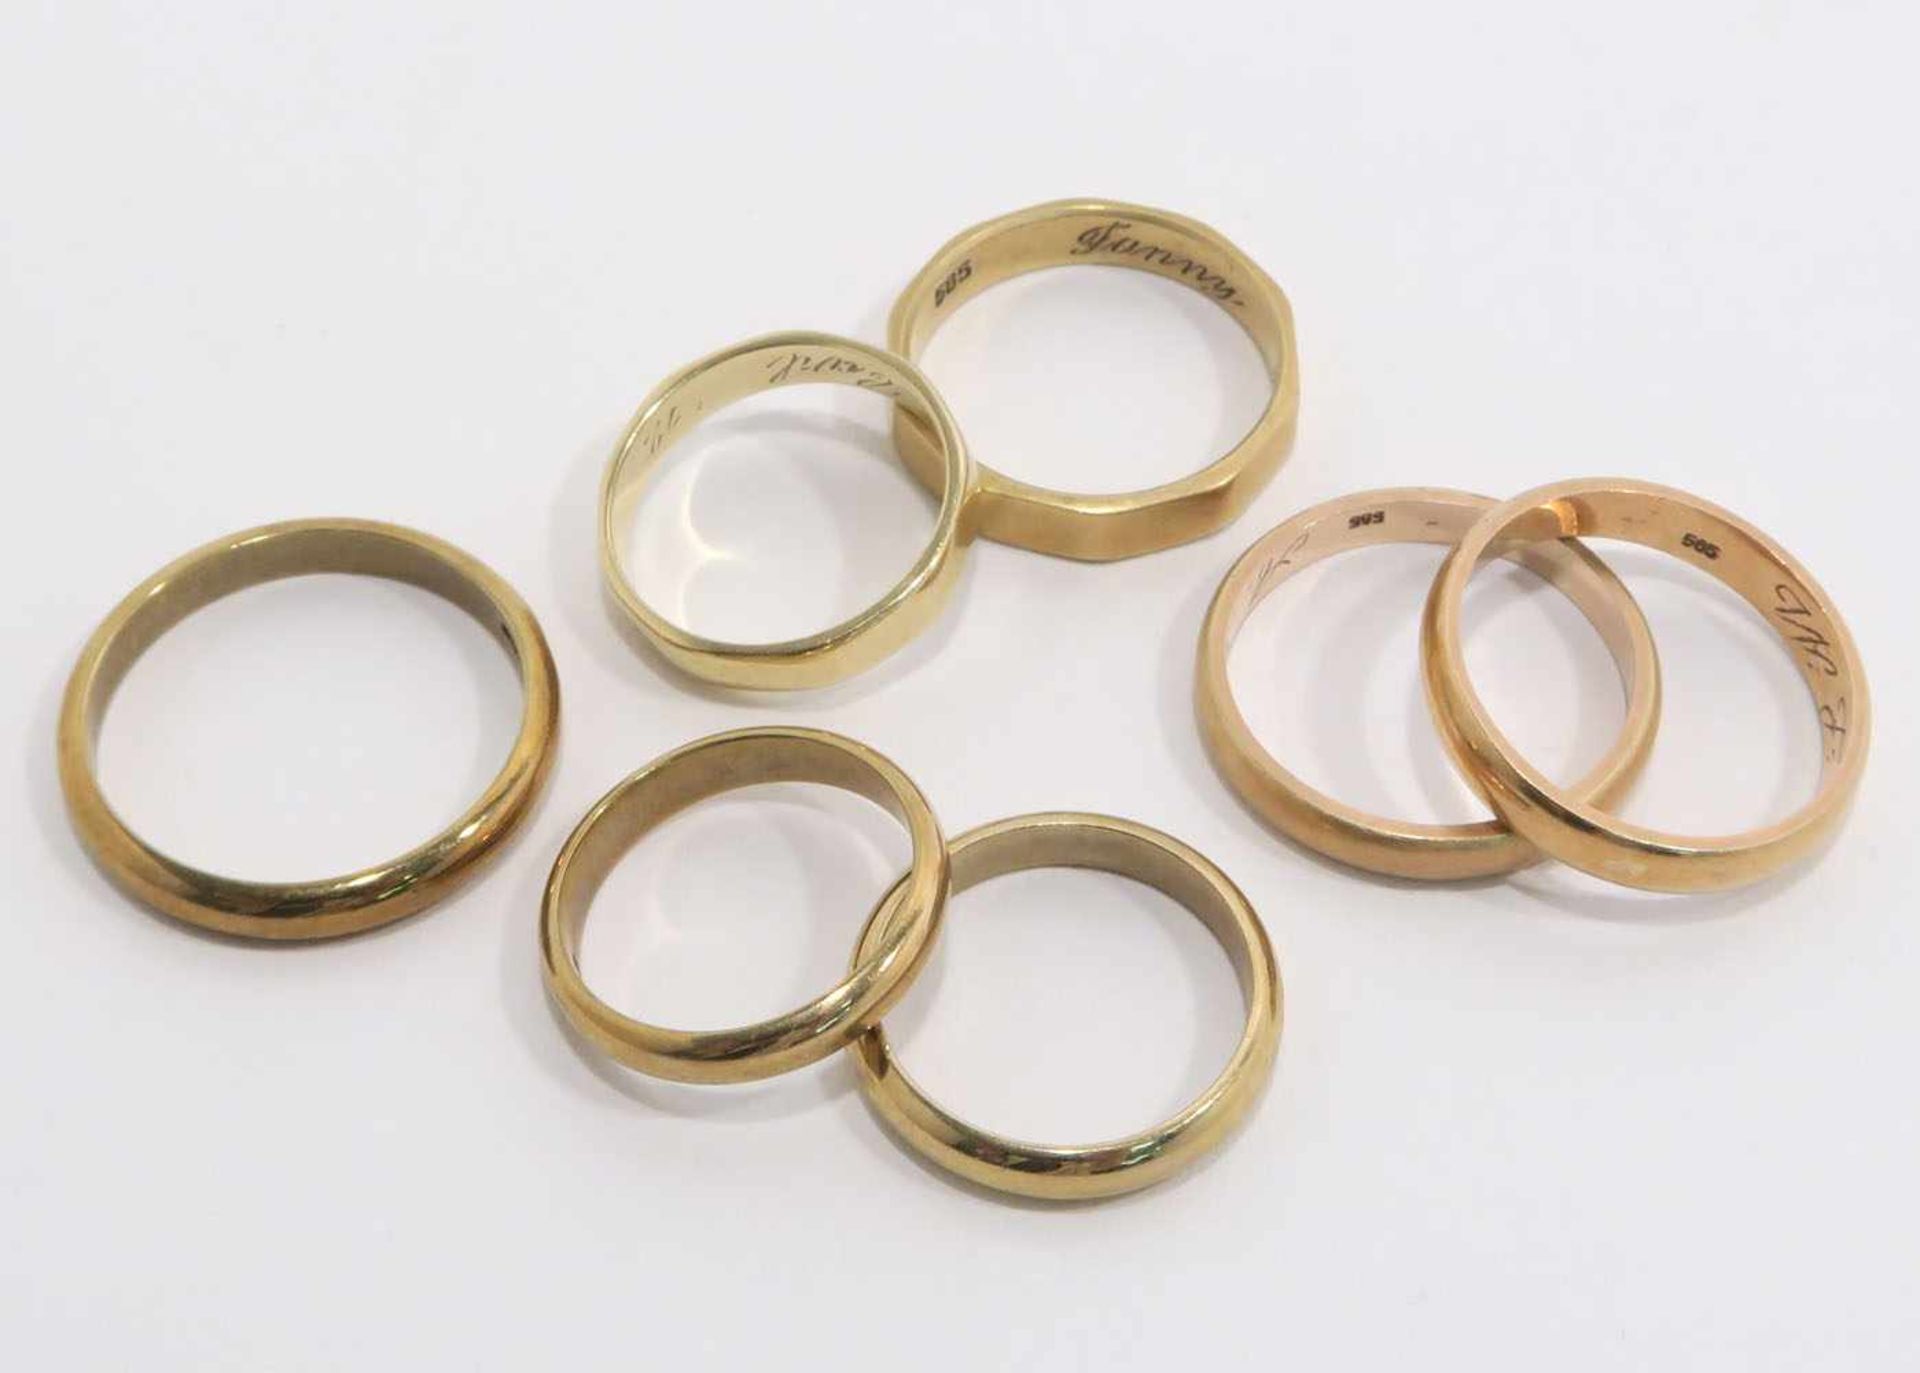 Sieben RingeVier Ringe 14 K GG und drei Ringe 8 K GG, Marken (585 bzw. 333), innen graviert.